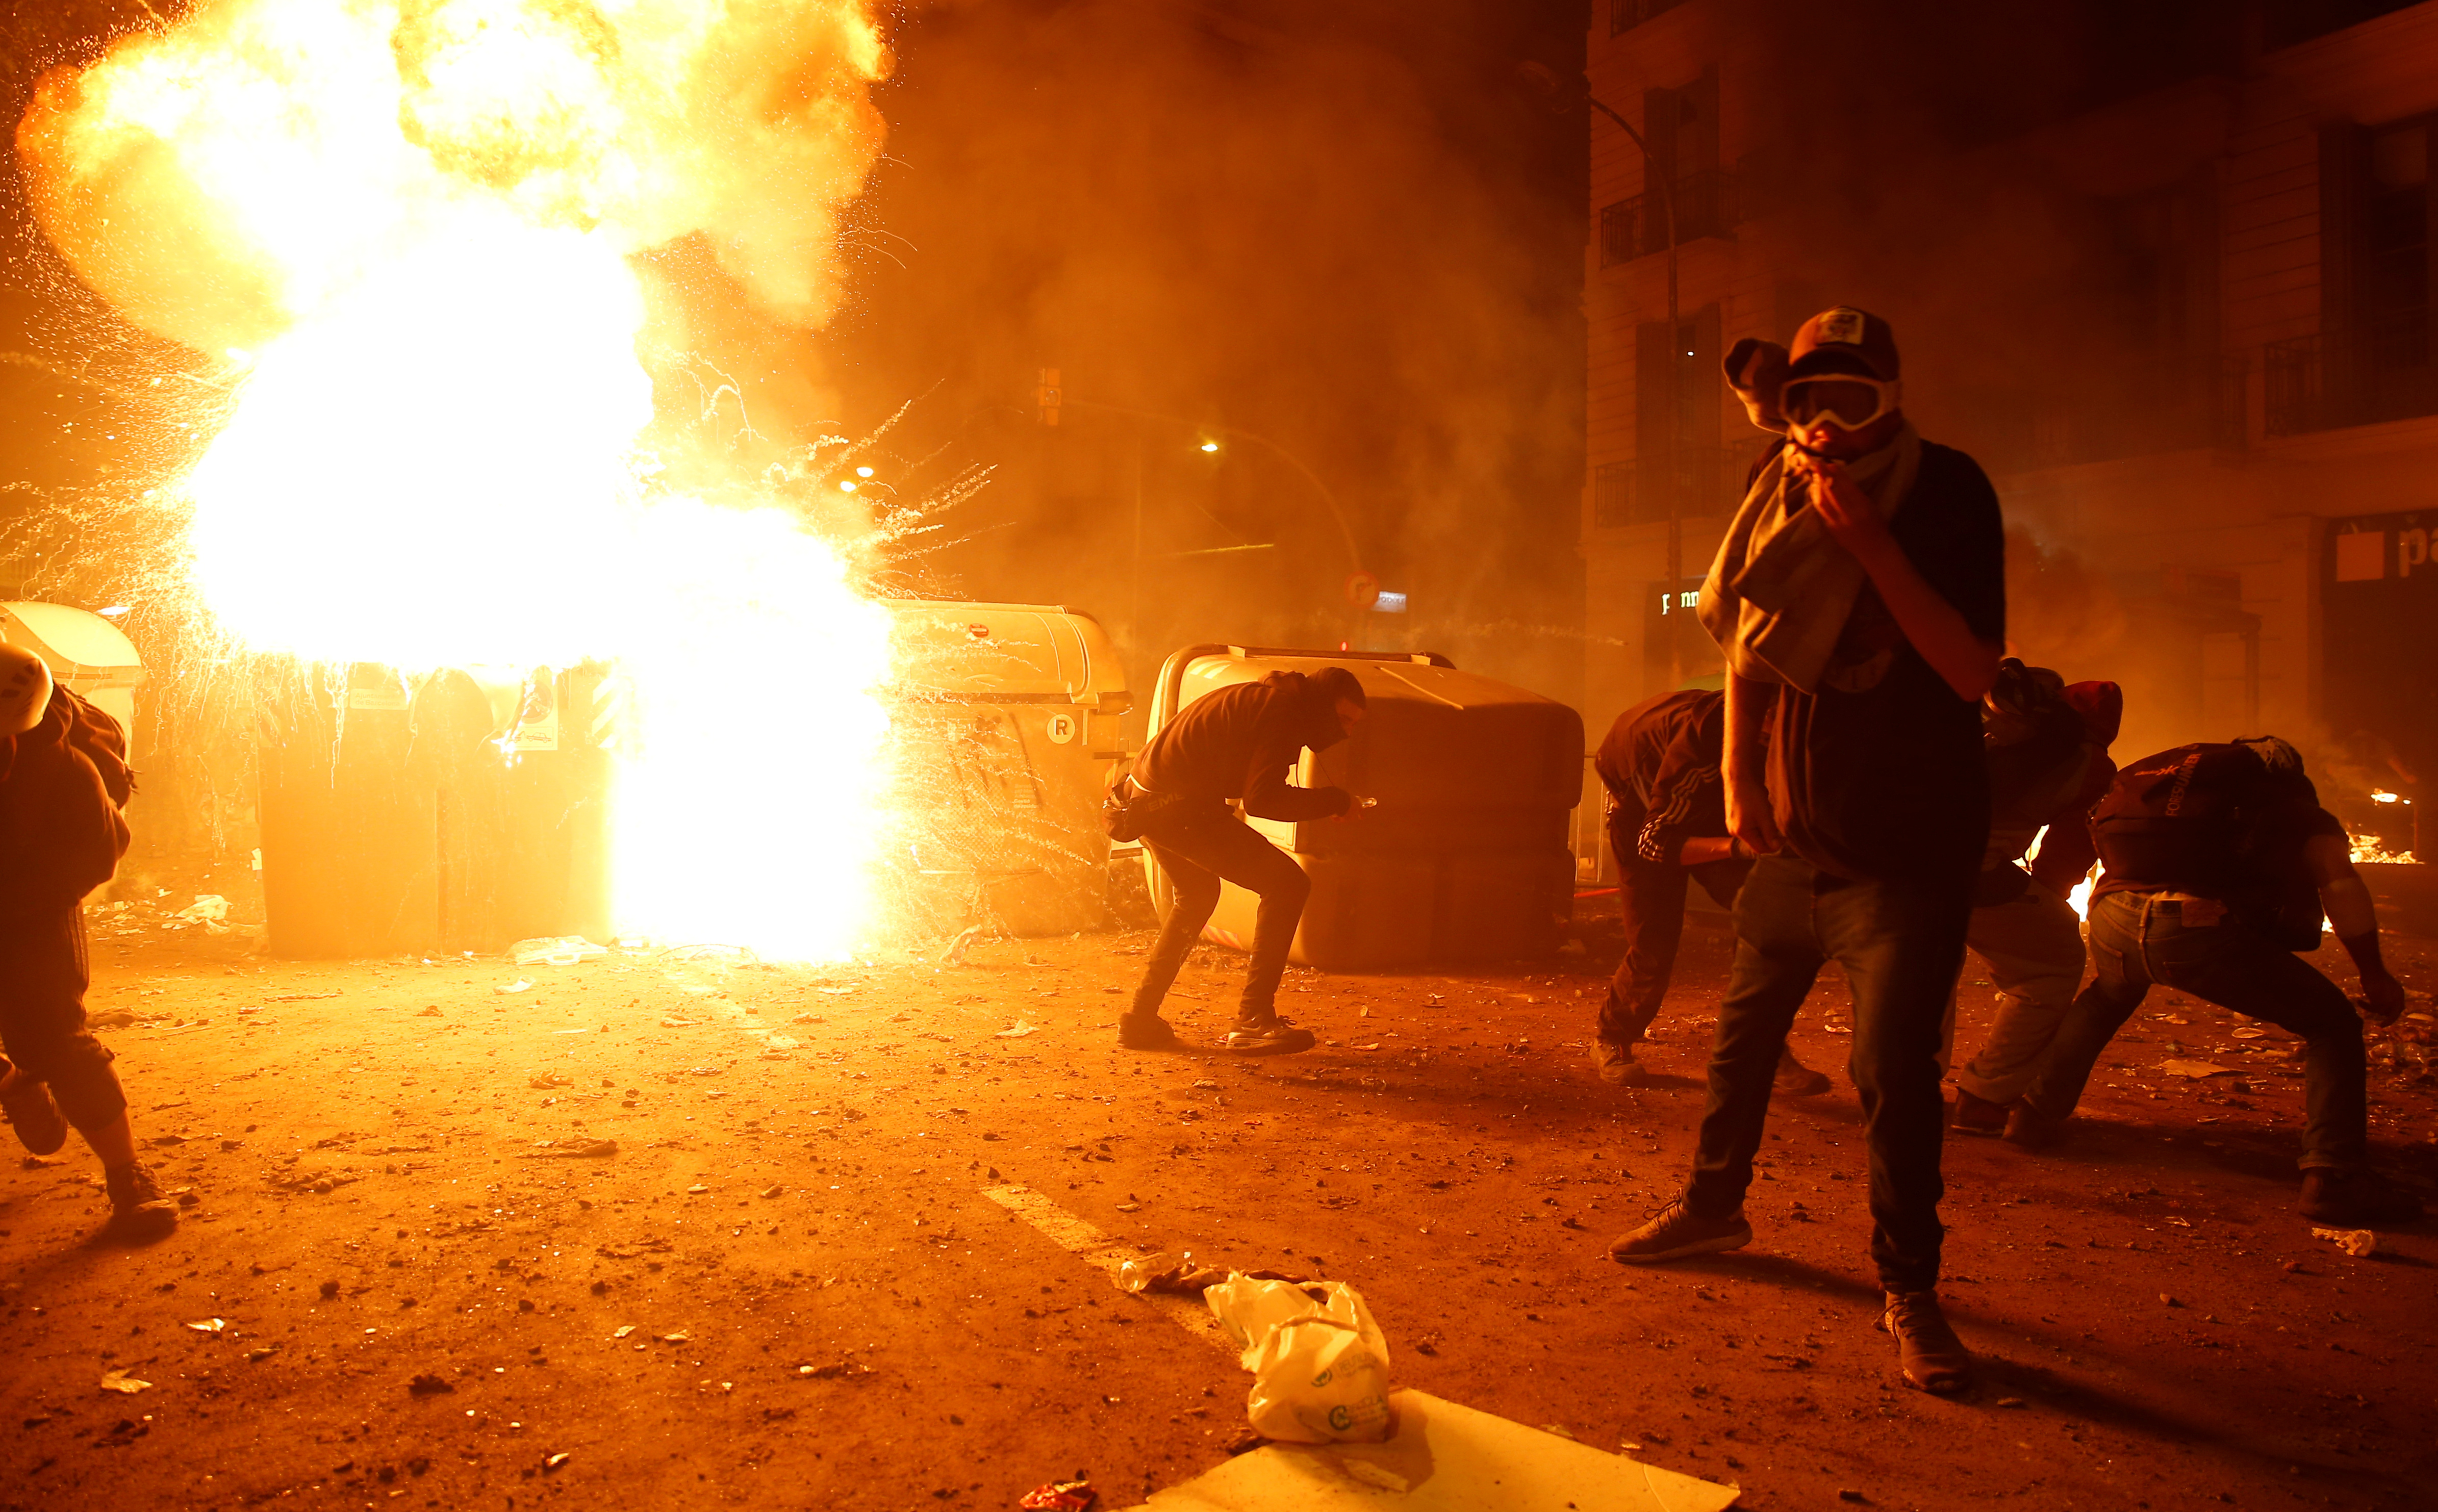 Gobierno español denuncia la “extrema” violencia en protestas vandálicas en Cataluña